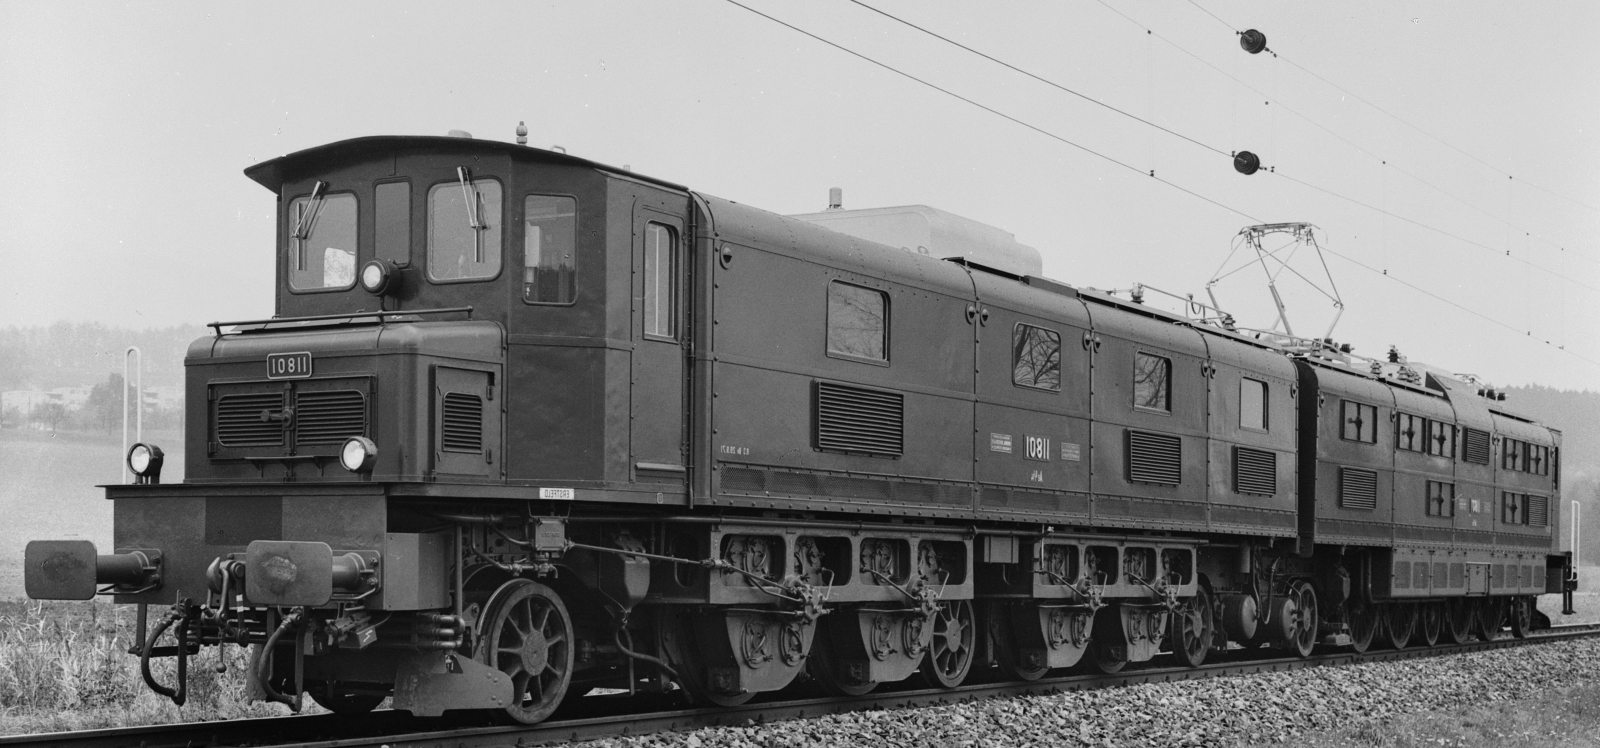 No. 11801 with the original square locomotive body